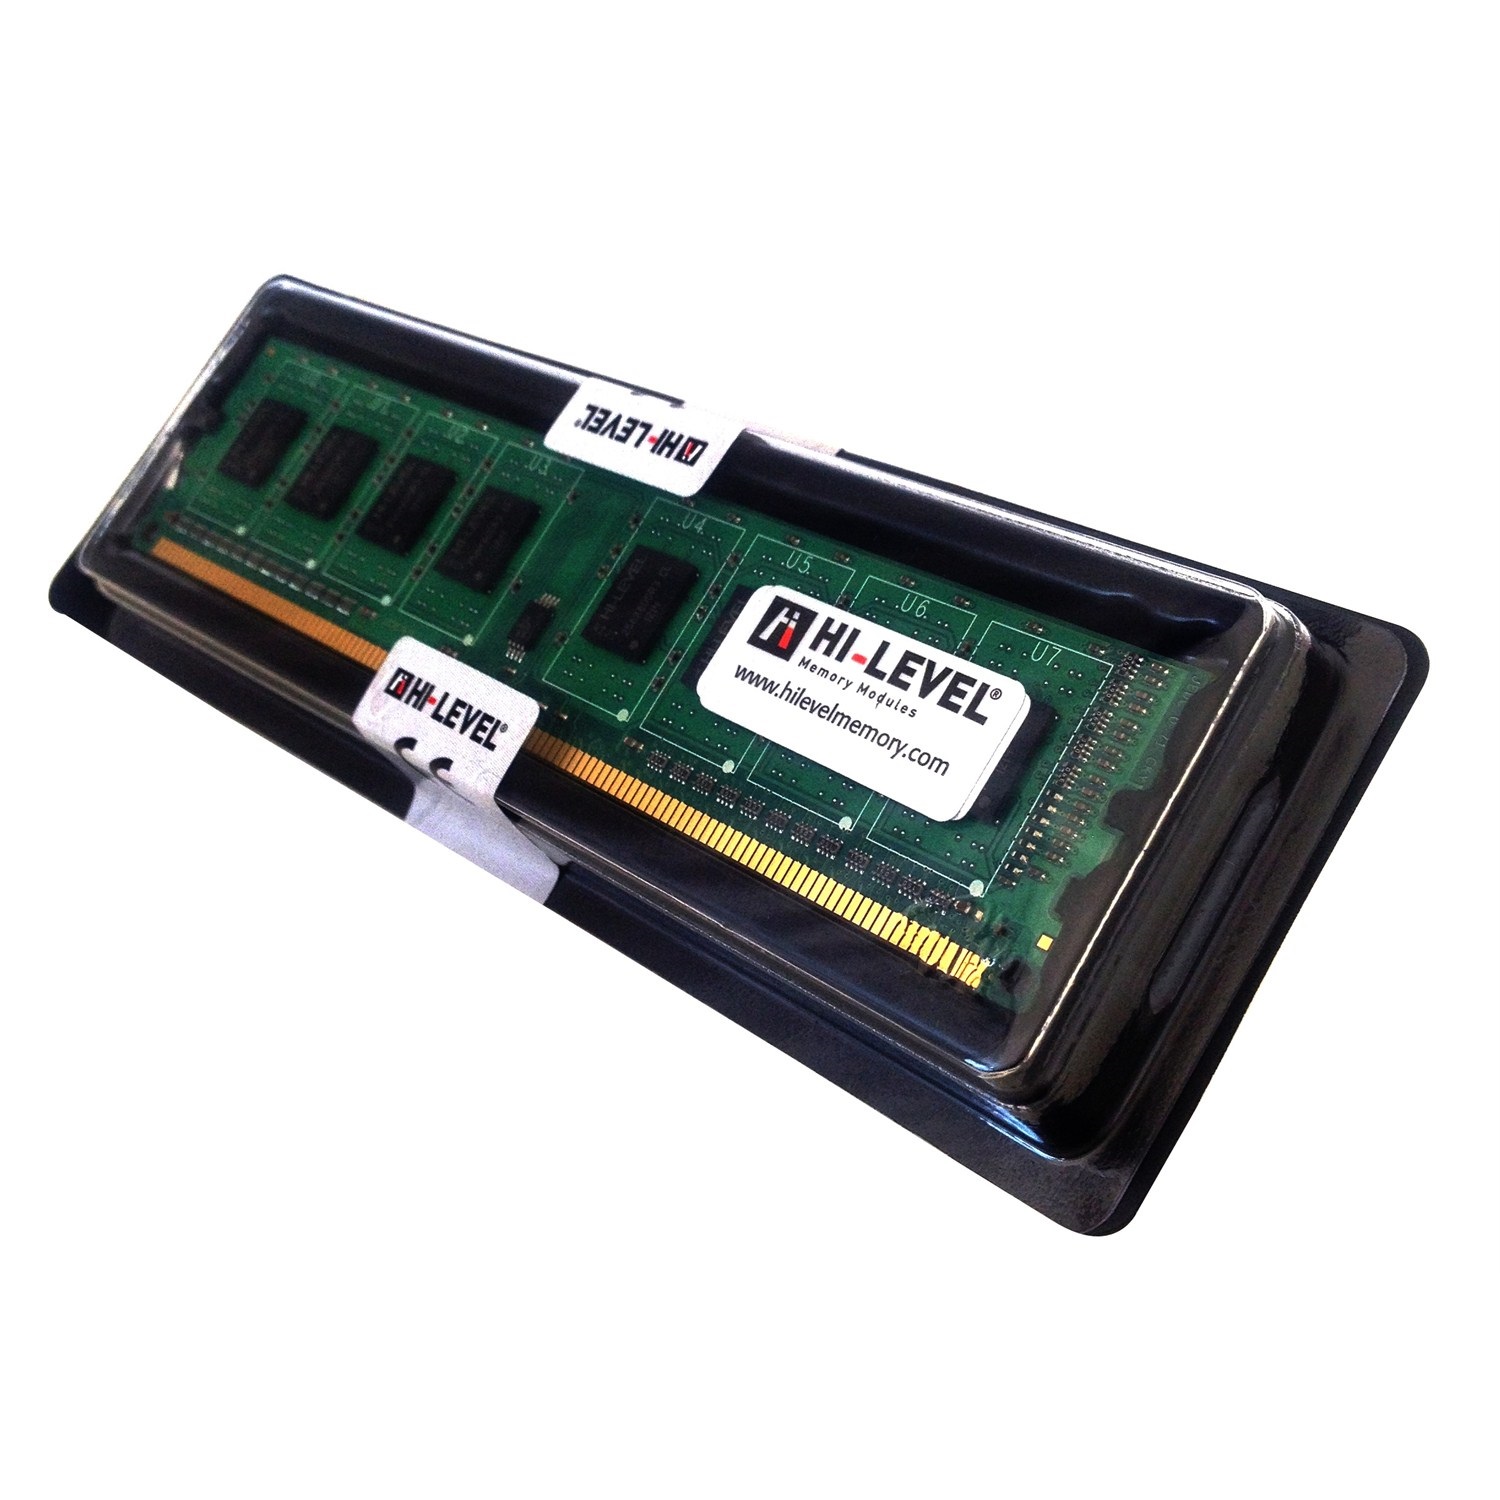 2 GB DDR2 800 MHz HI-LEVEL KUTULU (HLV-PC6400-2G)